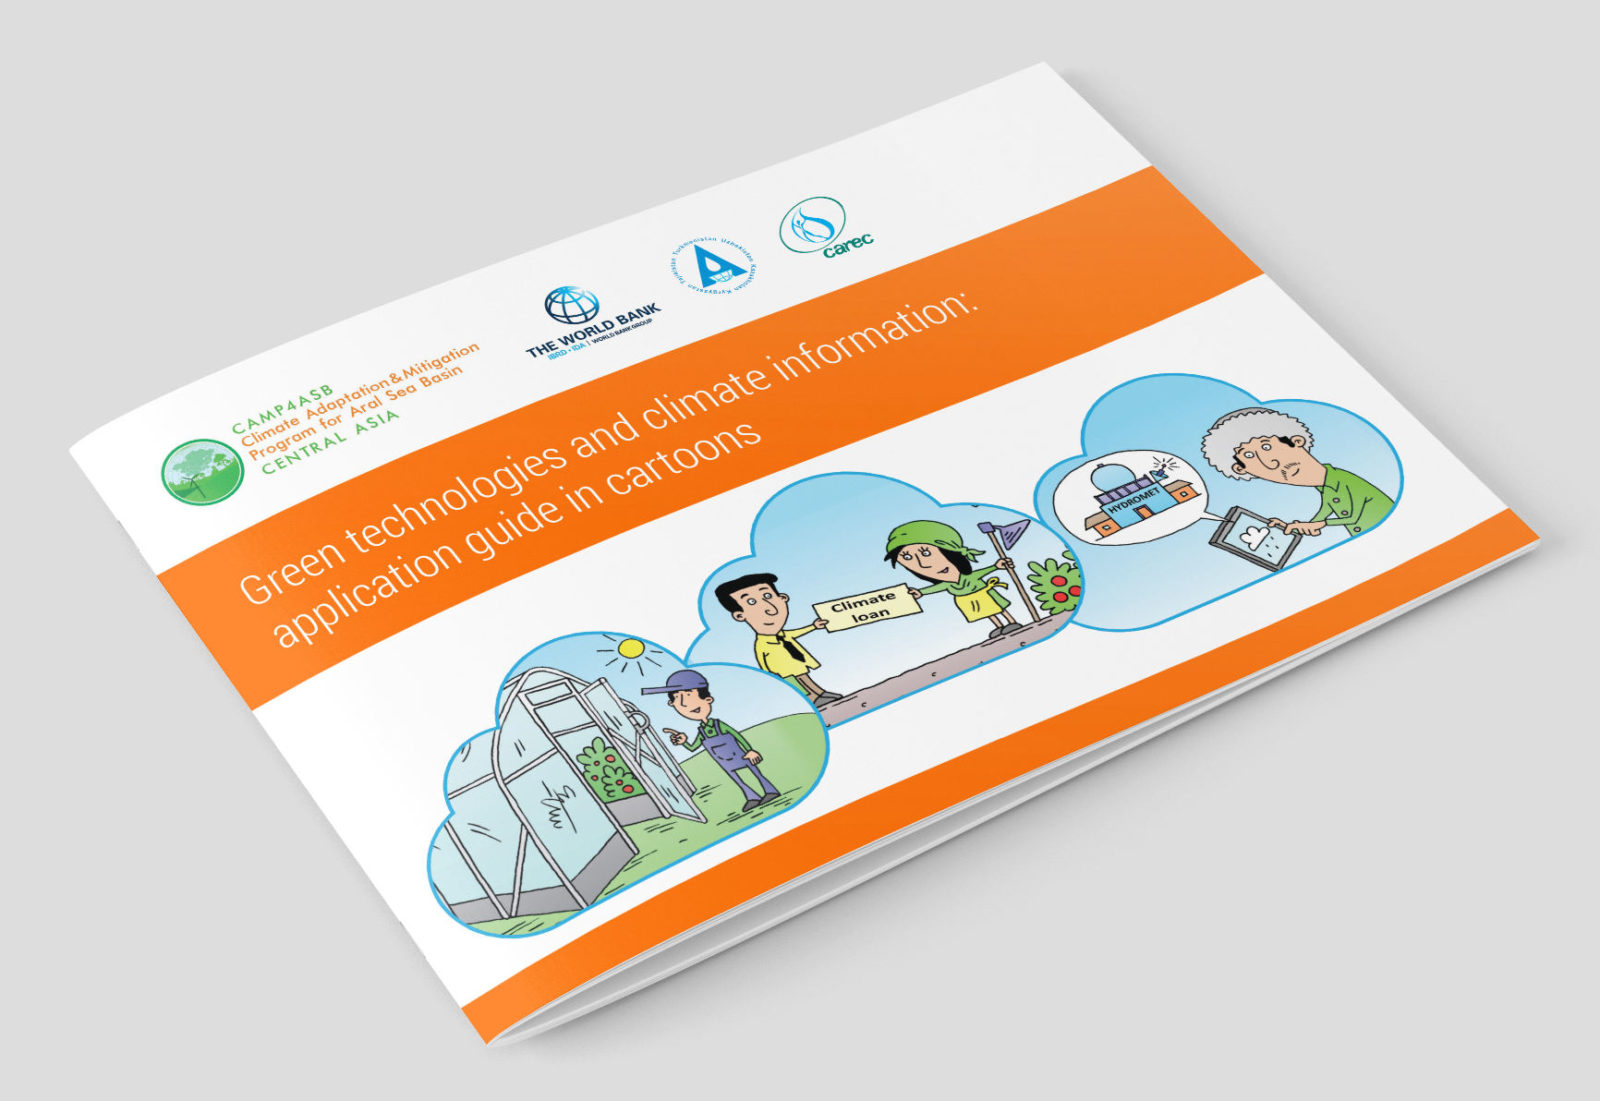 Зеленые технологии и климатическая информация: иллюстрированное пособие